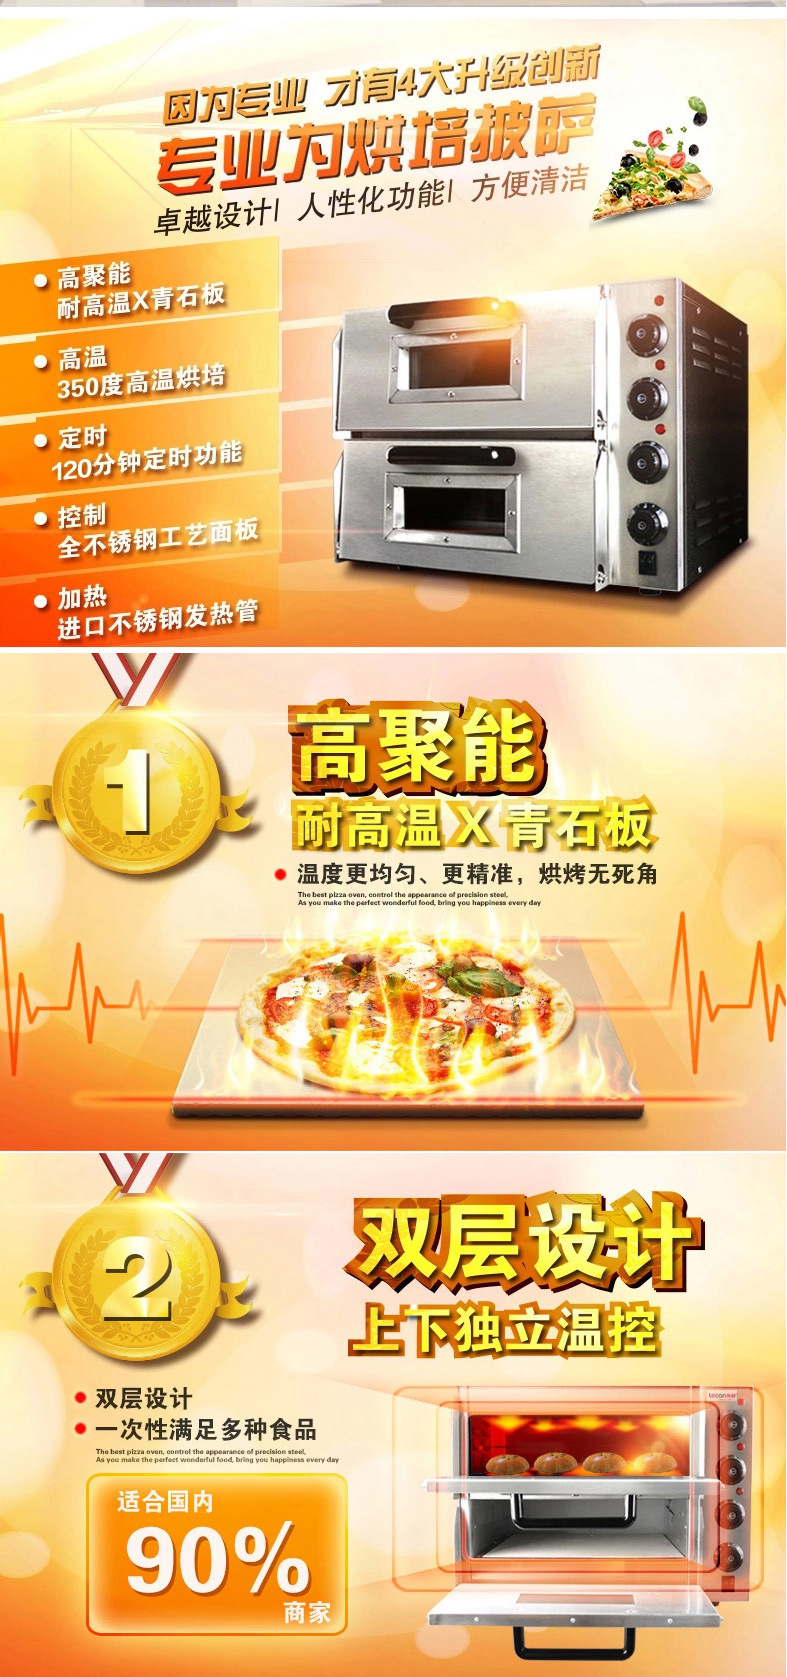 【正品】睿美烤箱商用烤炉双层蛋糕面包设备电烤箱二层披萨烤箱